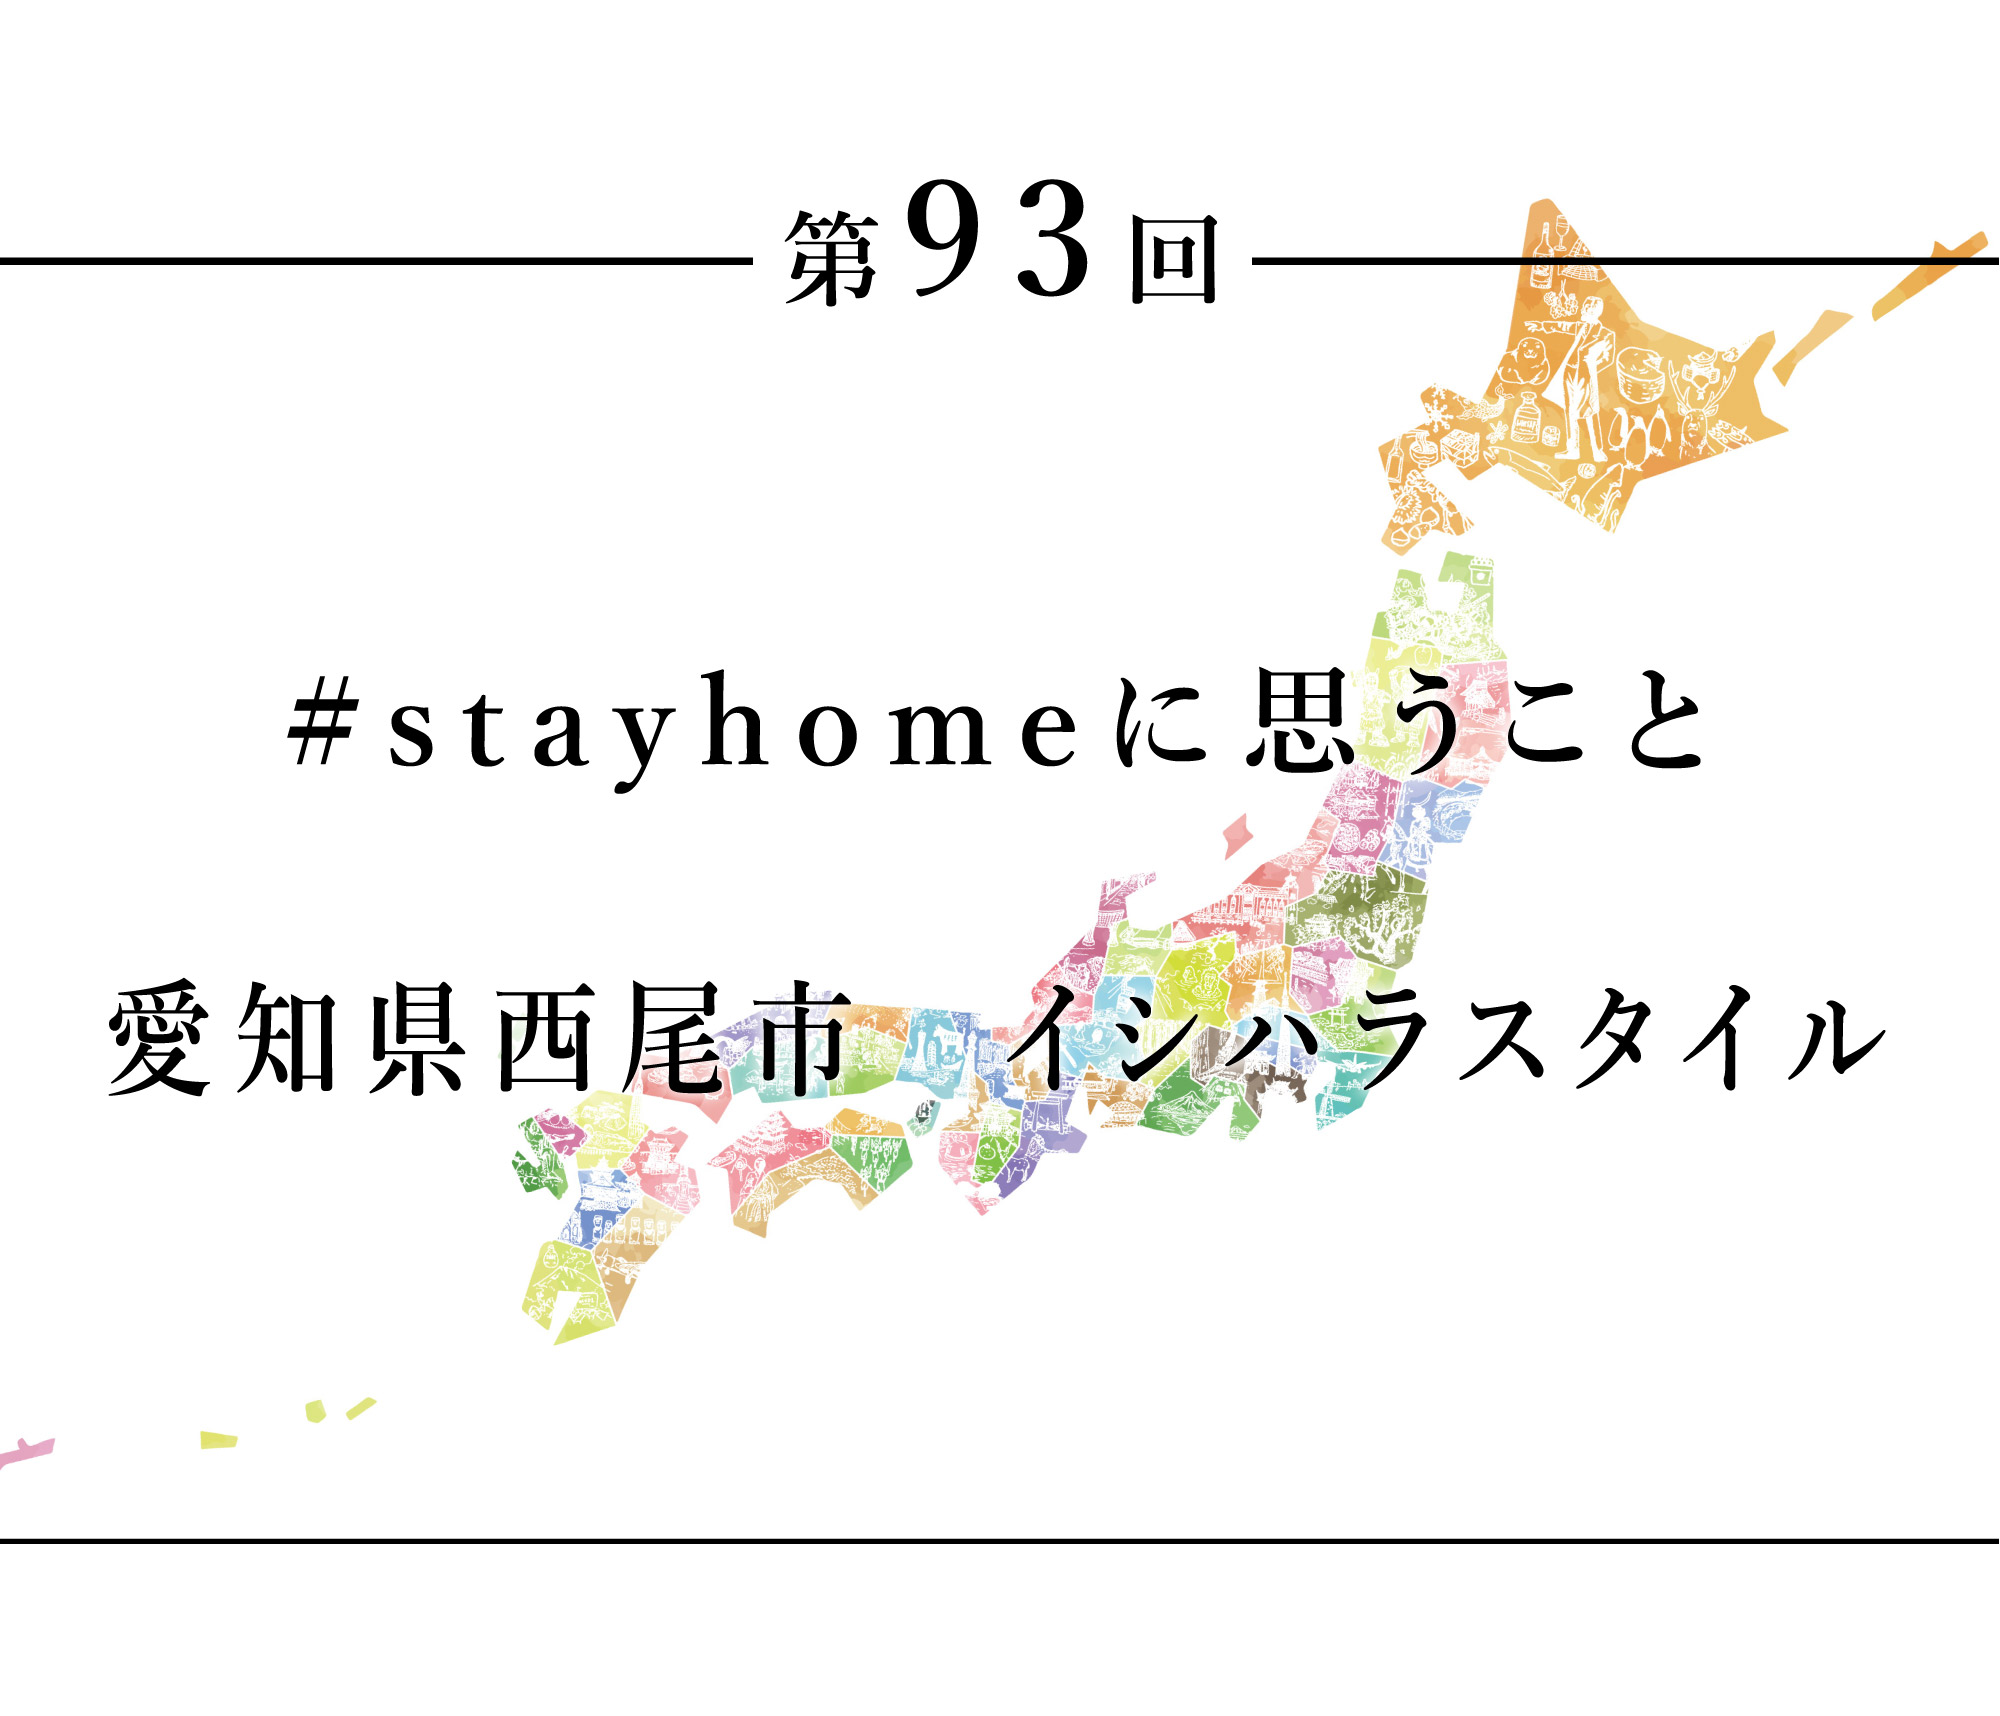 ちいきのたより第93回#stayhomeに思うこと愛知県西尾市イシハラスタイル